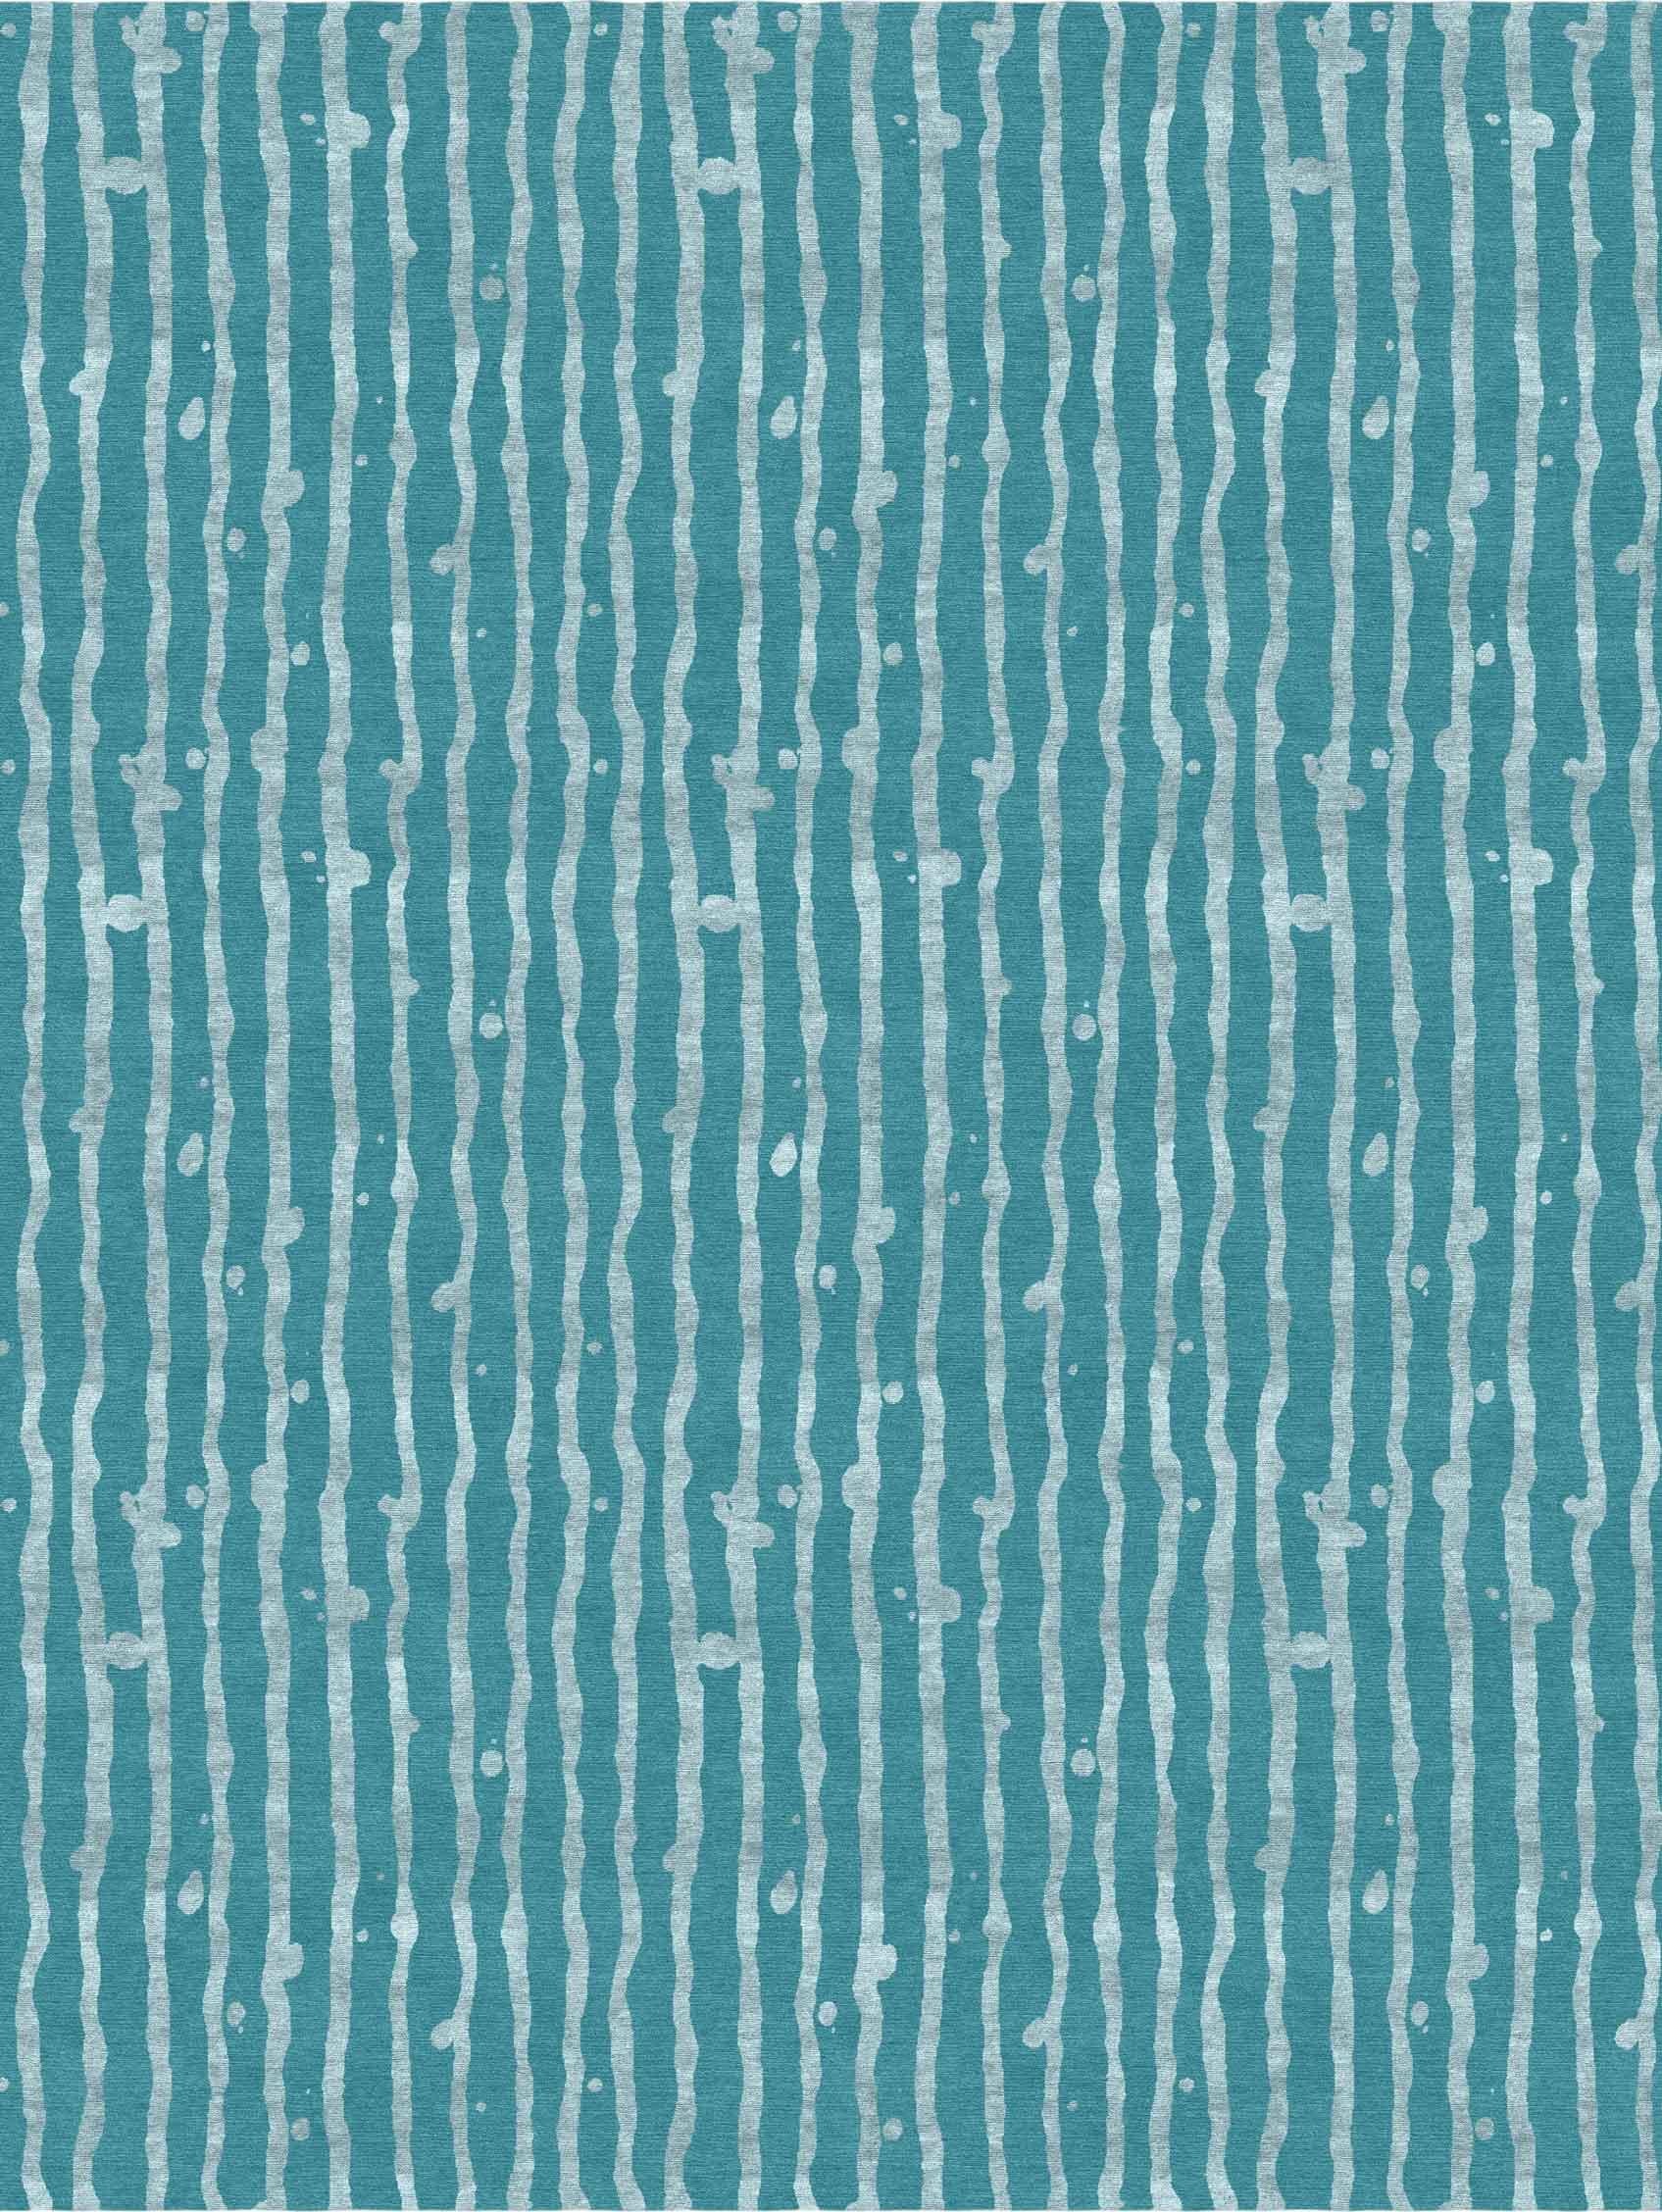 Tapis noué à la main Drippy Stripe Gulf d'Eskayel
Dimensions : D 8' x H 10'
Hauteur de la pile : 6 mm
Matériaux : 100% laine mérinos

Les tapis noués à la main Eskayel sont tissés sur commande et peuvent être personnalisés dans différentes tailles,